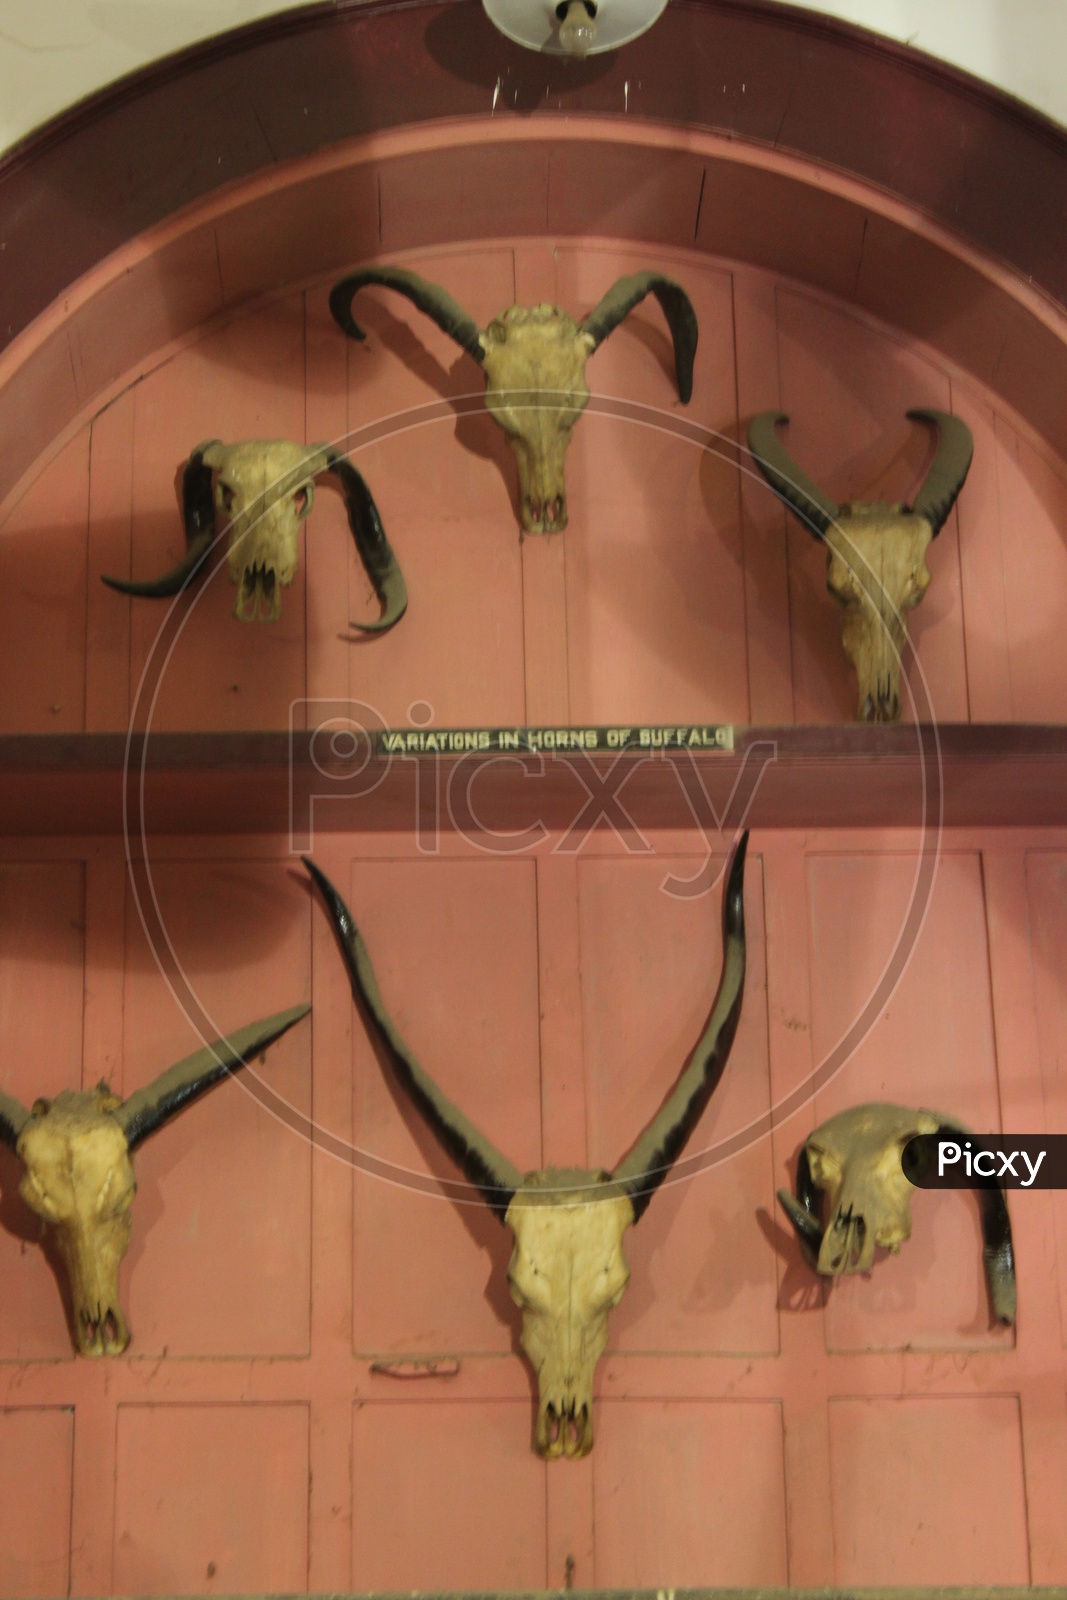 Variations of horns of buffalo